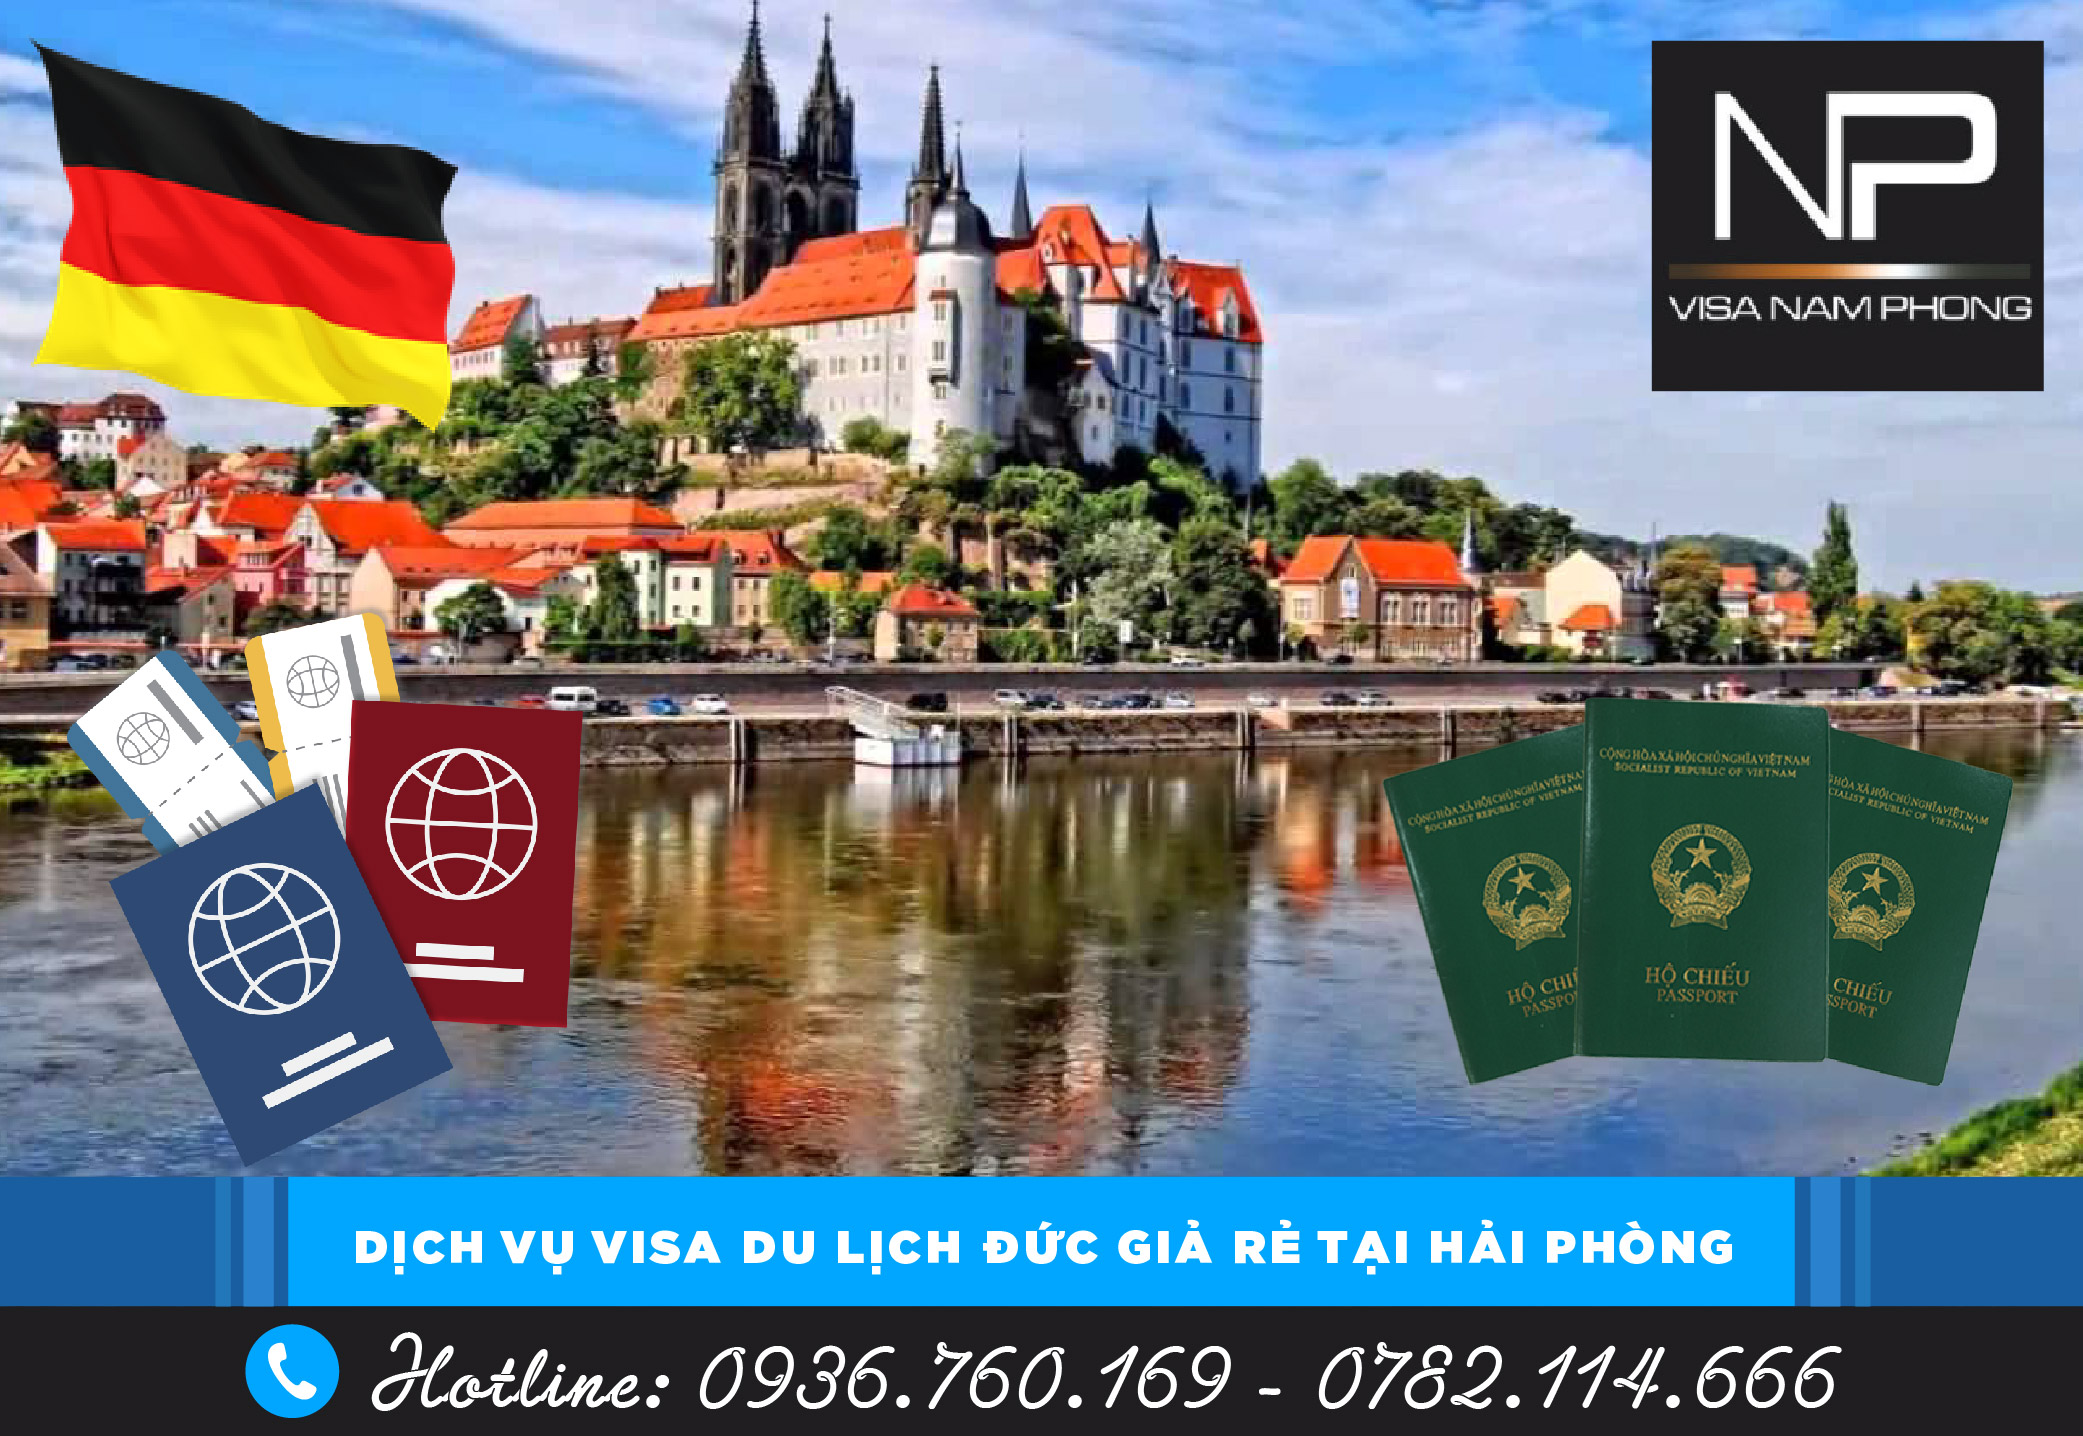 Dịch vụ visa du lịch Đức giả rẻ tại Hải Phòng